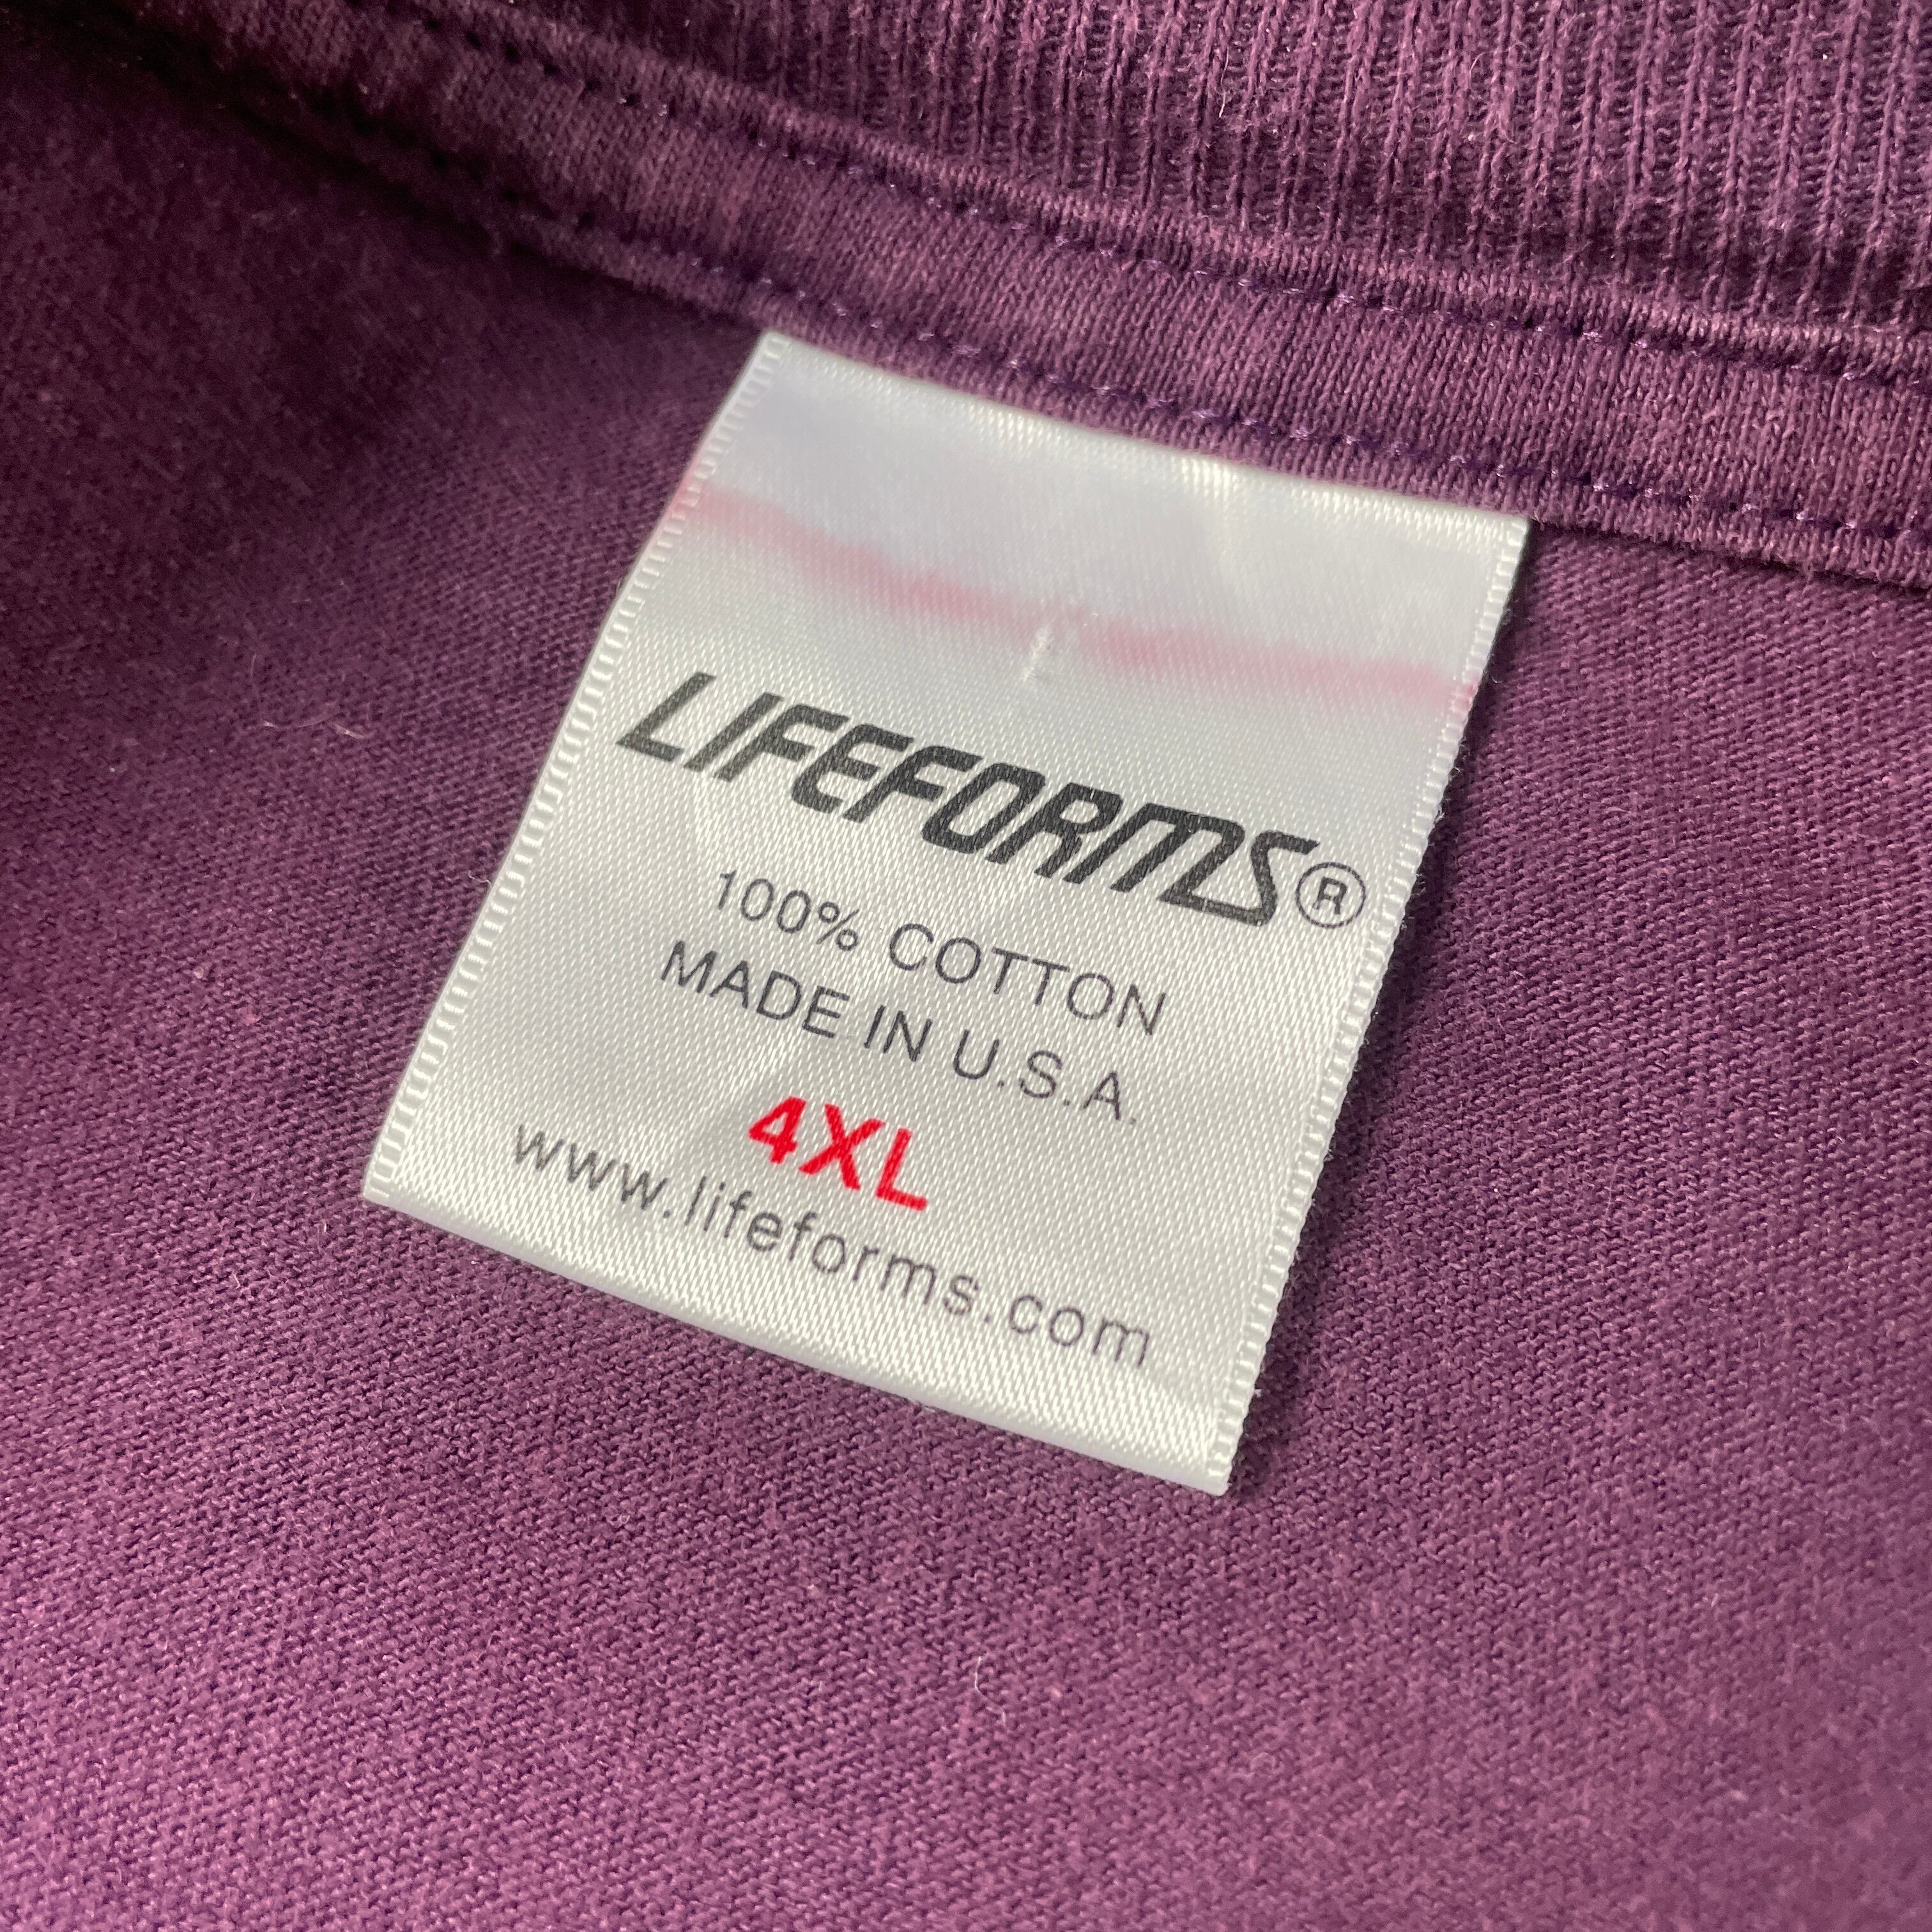 スーパービッグサイズ 90年代 USA製 LIFEFORMS チワワ イヌ アニマル メッセージ バックプリントTシャツ メンズ4XL